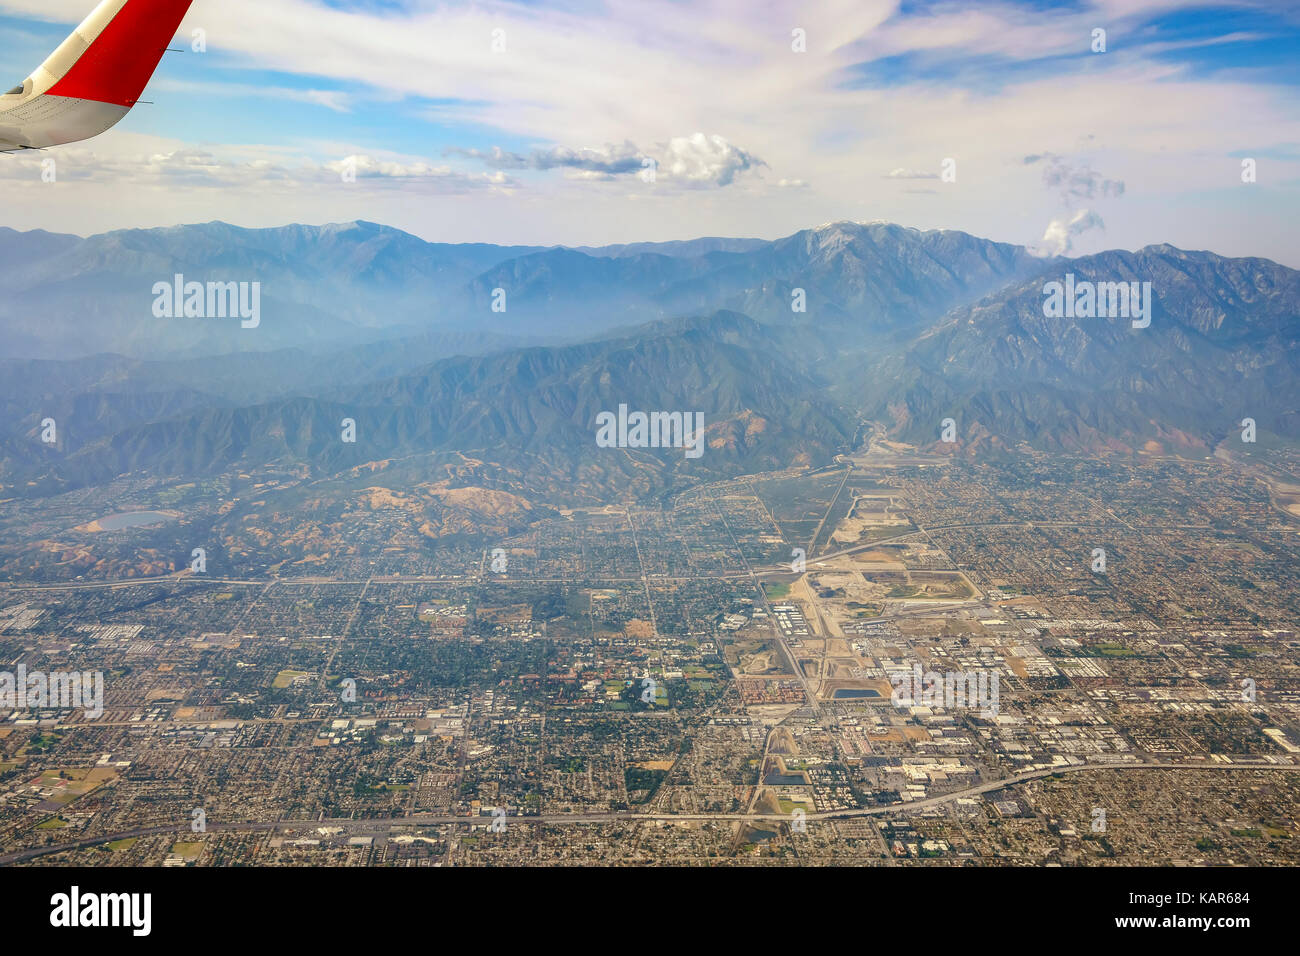 Vue aérienne de la montagne, vue sur la claremont siège dans un avion, en Californie, États-Unis. Banque D'Images